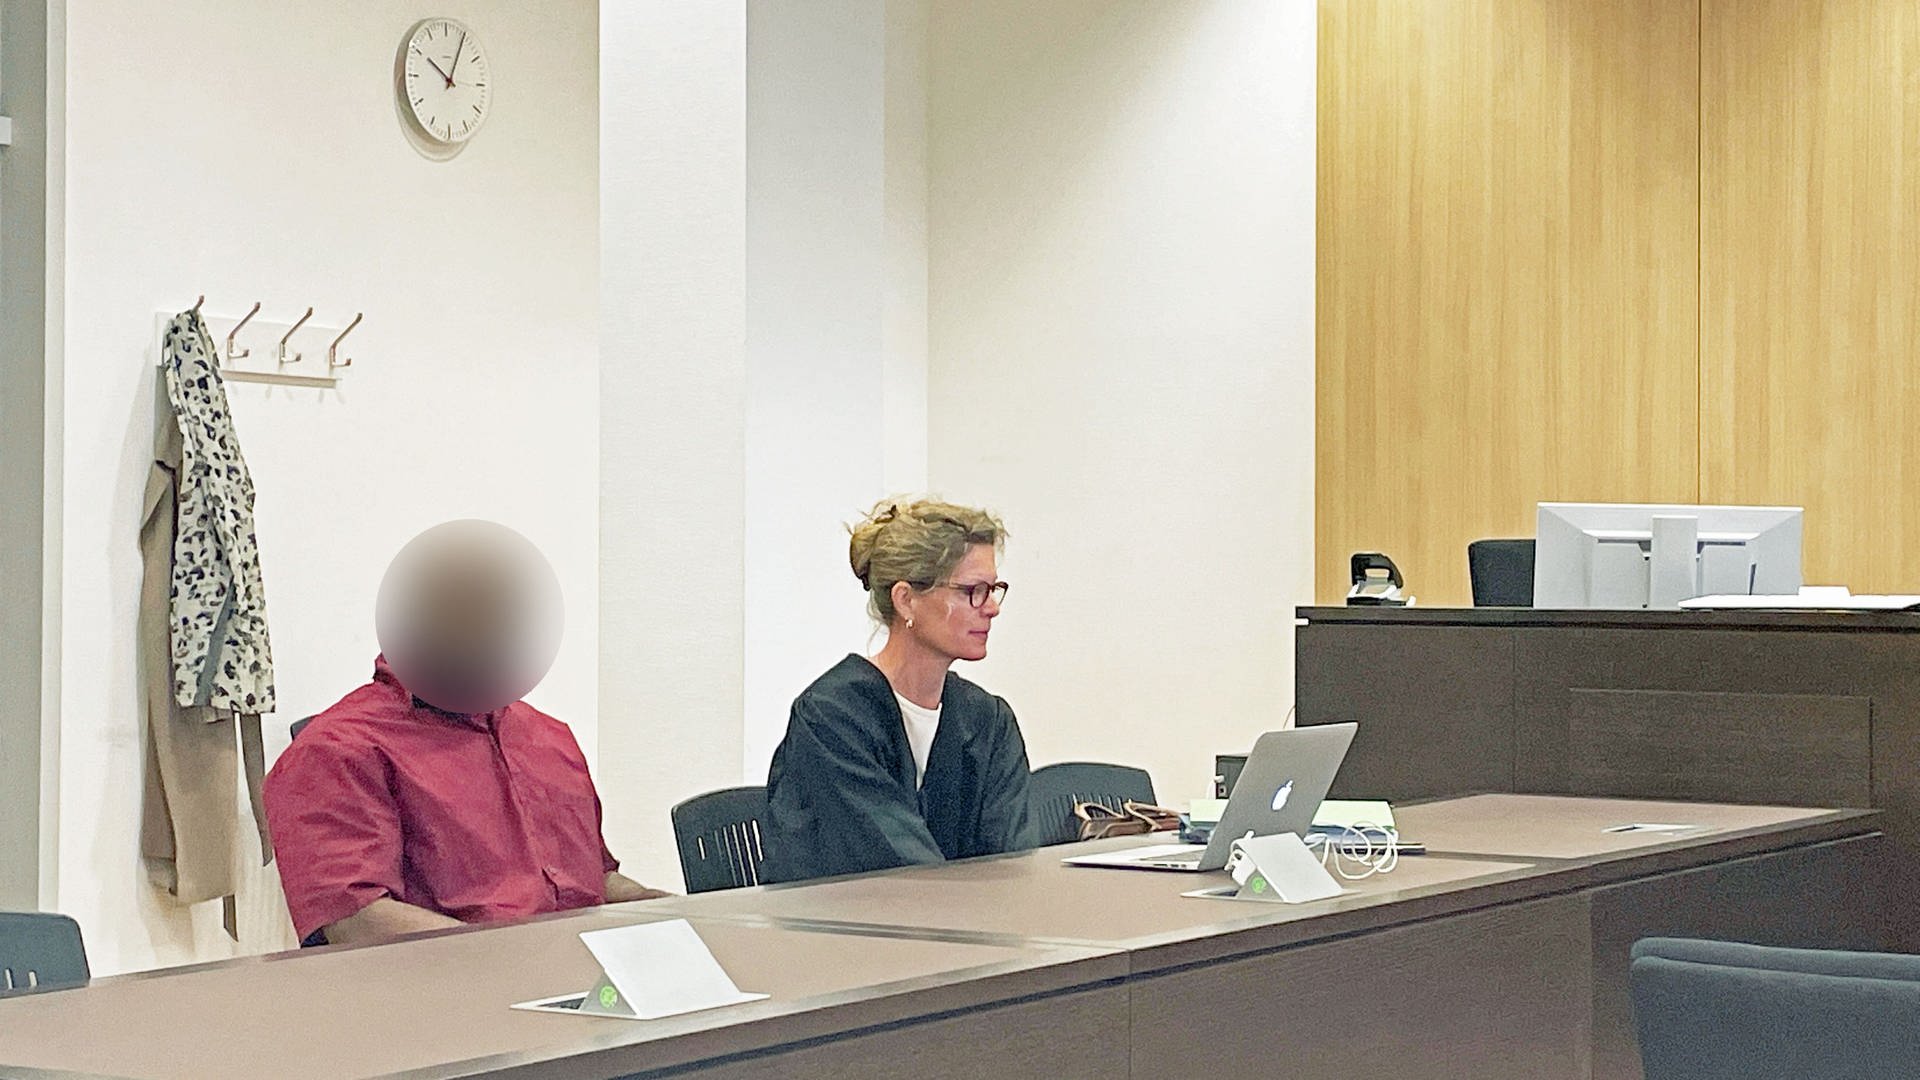 Wiesbadener vergewaltigt eigene Mutter - neun Jahre Haft